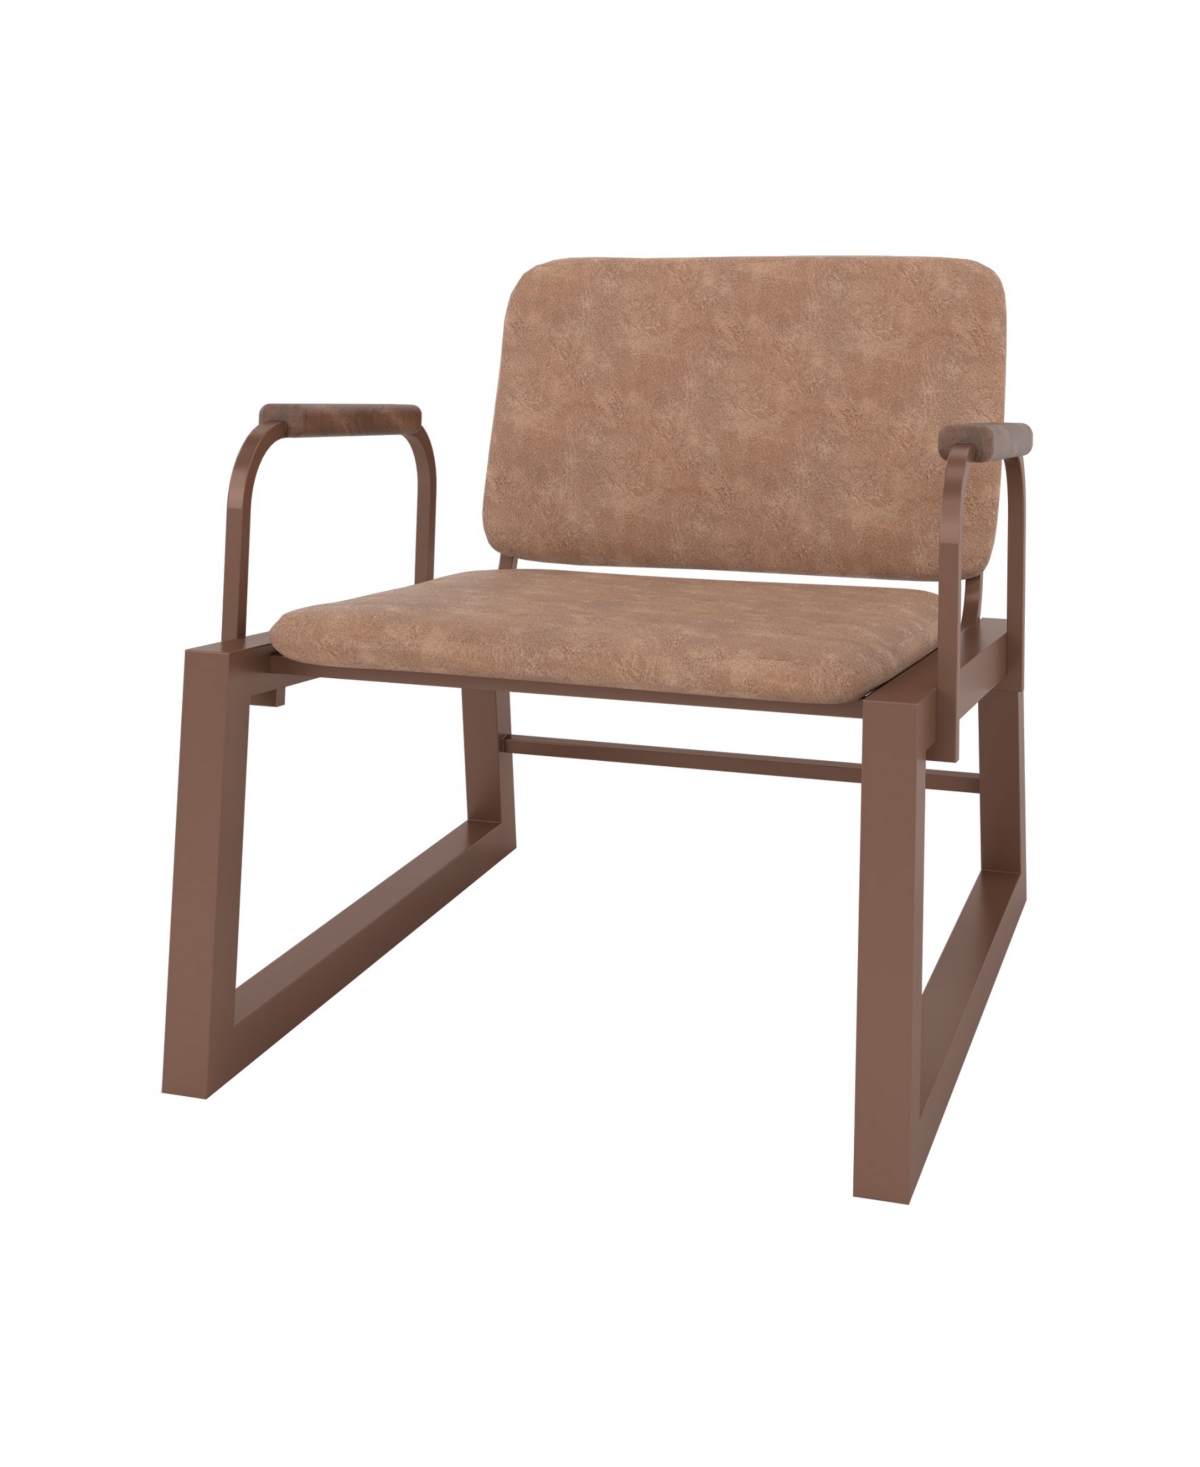 Manhattan Comfort Whythe Low Accent Chair 1.0 In Corten